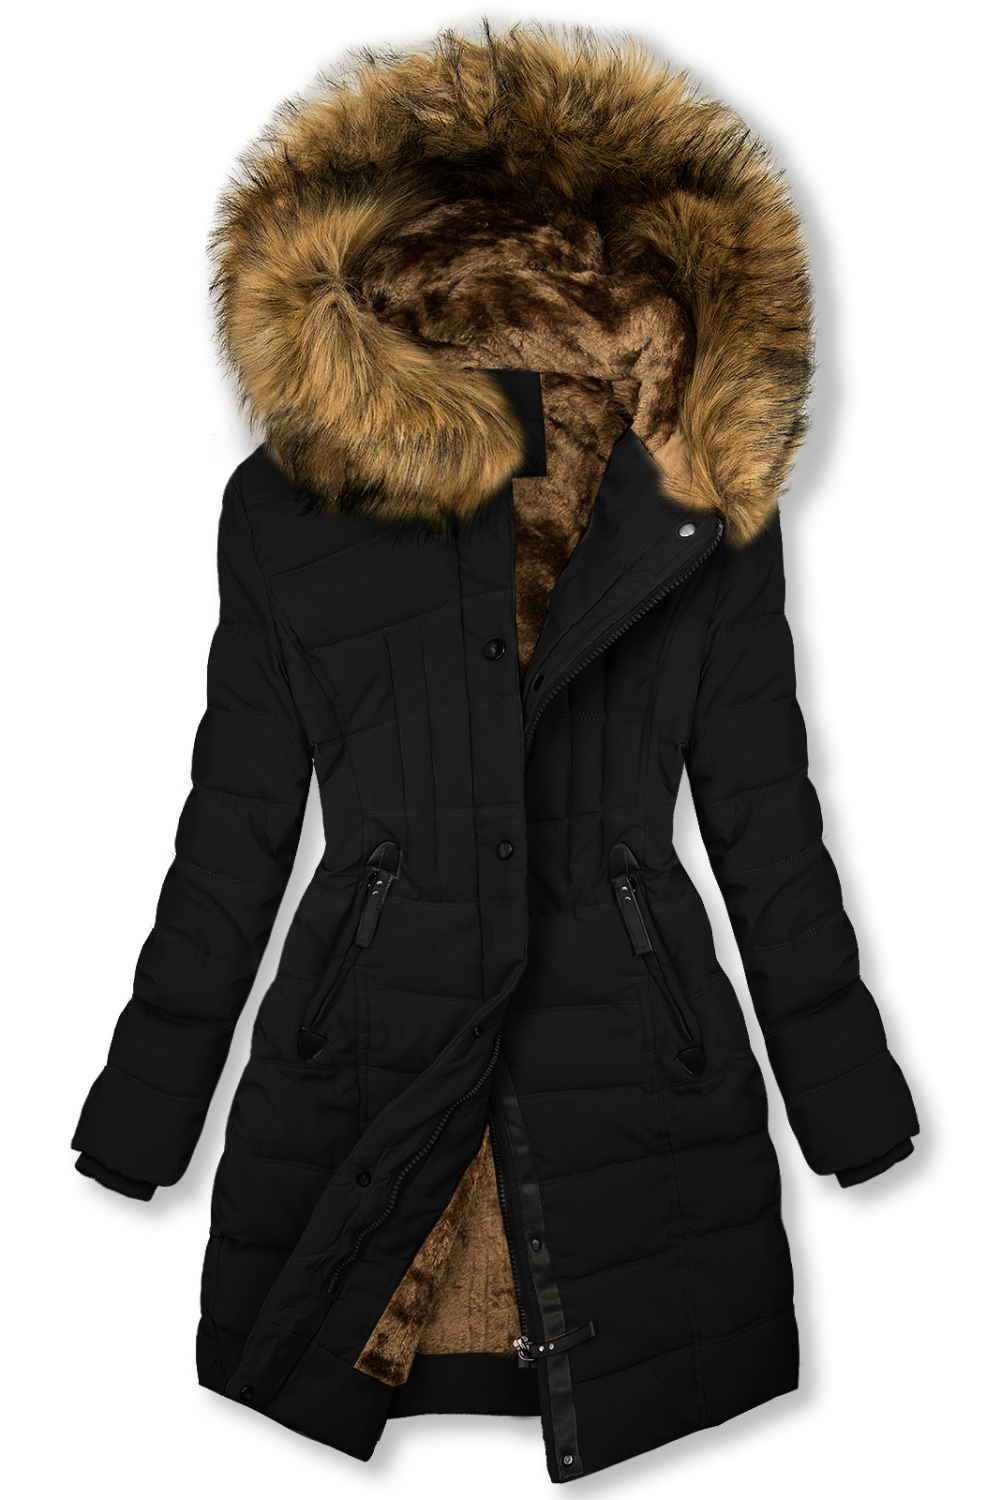 Čierna zimná bunda s plyšom a kožušinou.
- vnútrorná podšívka z mäkkého plyšu 
- neodopínateľná kapucňa
- zapínanie na zips
- 2 predné vrecká
- na kapucni odnímateľná, nepravá kožušina
- materiál: 100% polyester